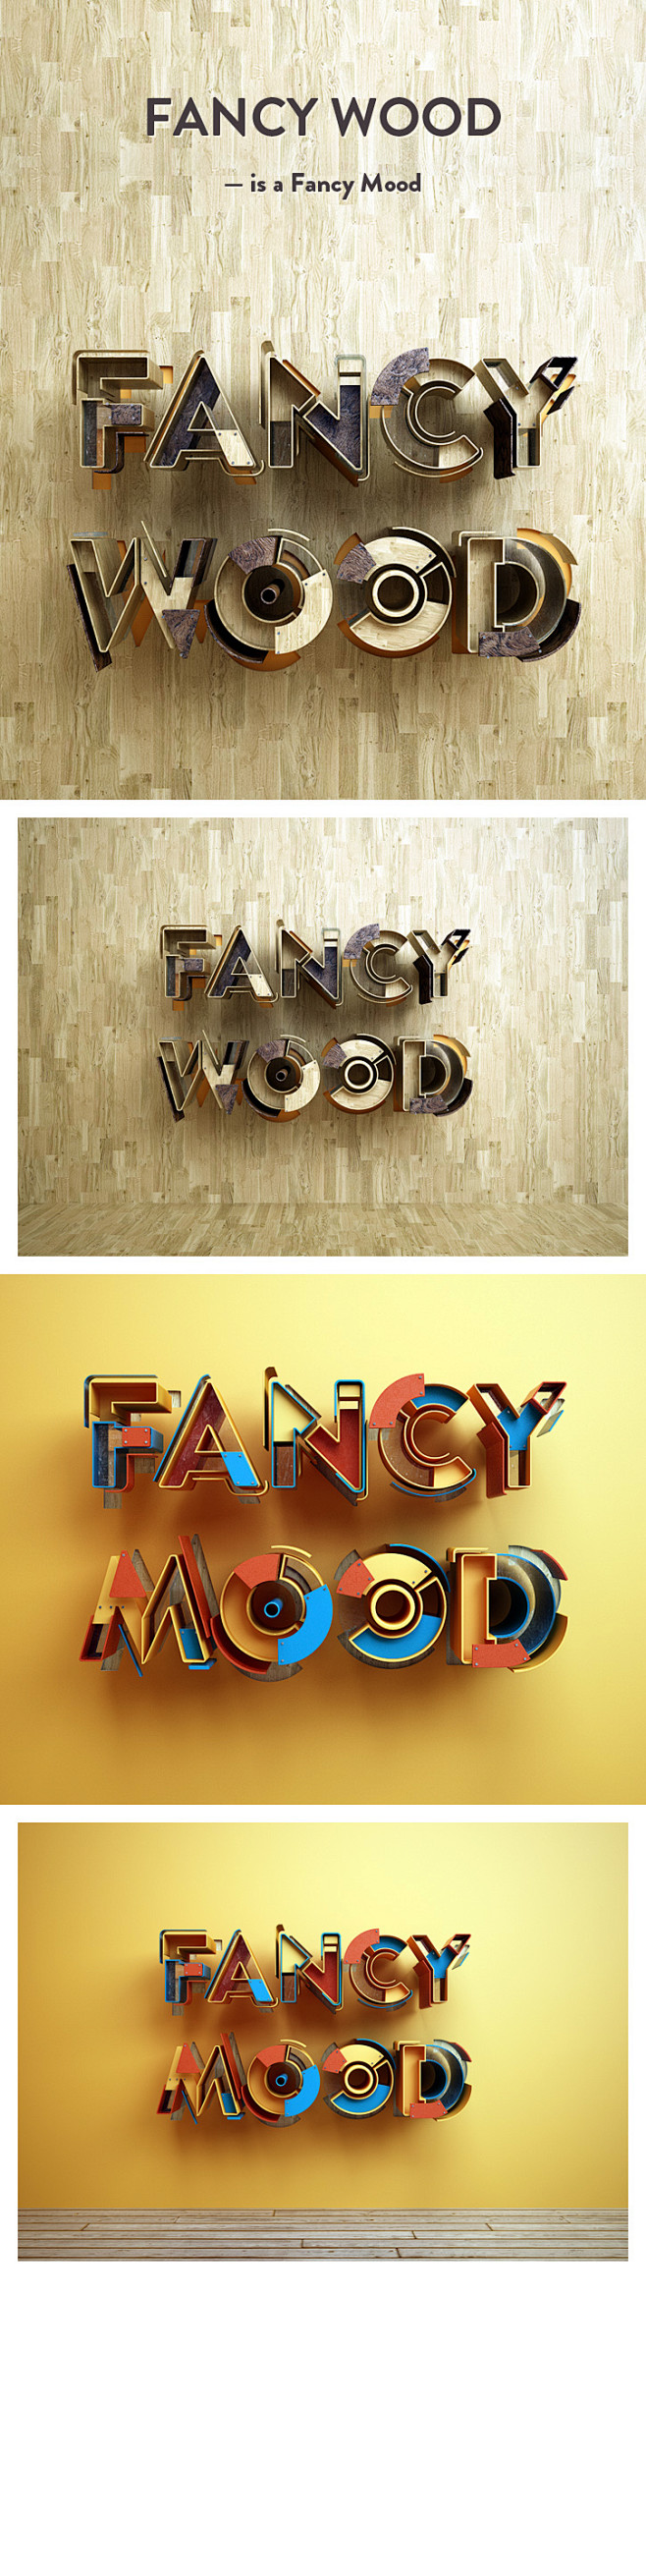 Fancy Wood is a Fanc...